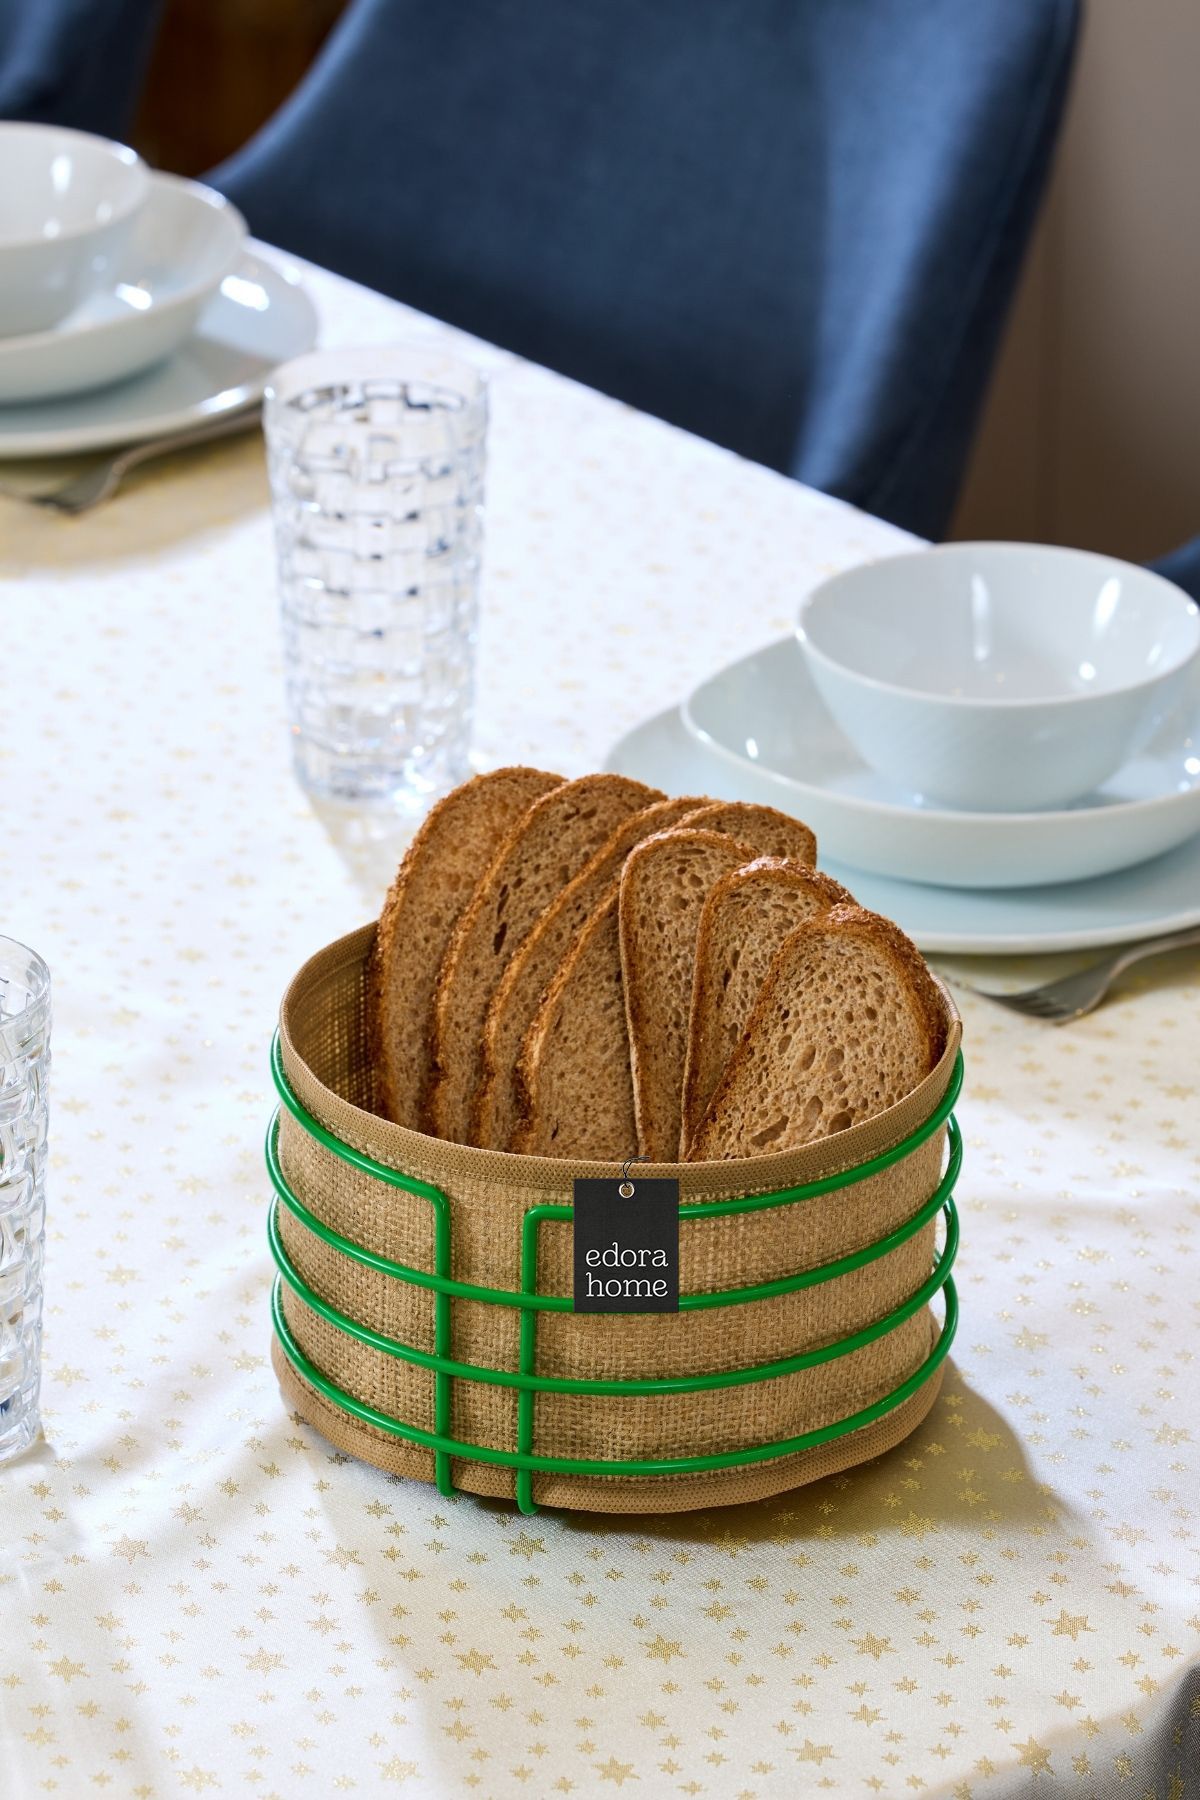 Edora Home Yeşil Yuvarlak Ekmek Sepeti Jüt Kumaş Bezi, Renkli Sunum Sepet Ekmeklik - Çok Amaçlı Metal Paslanmaz